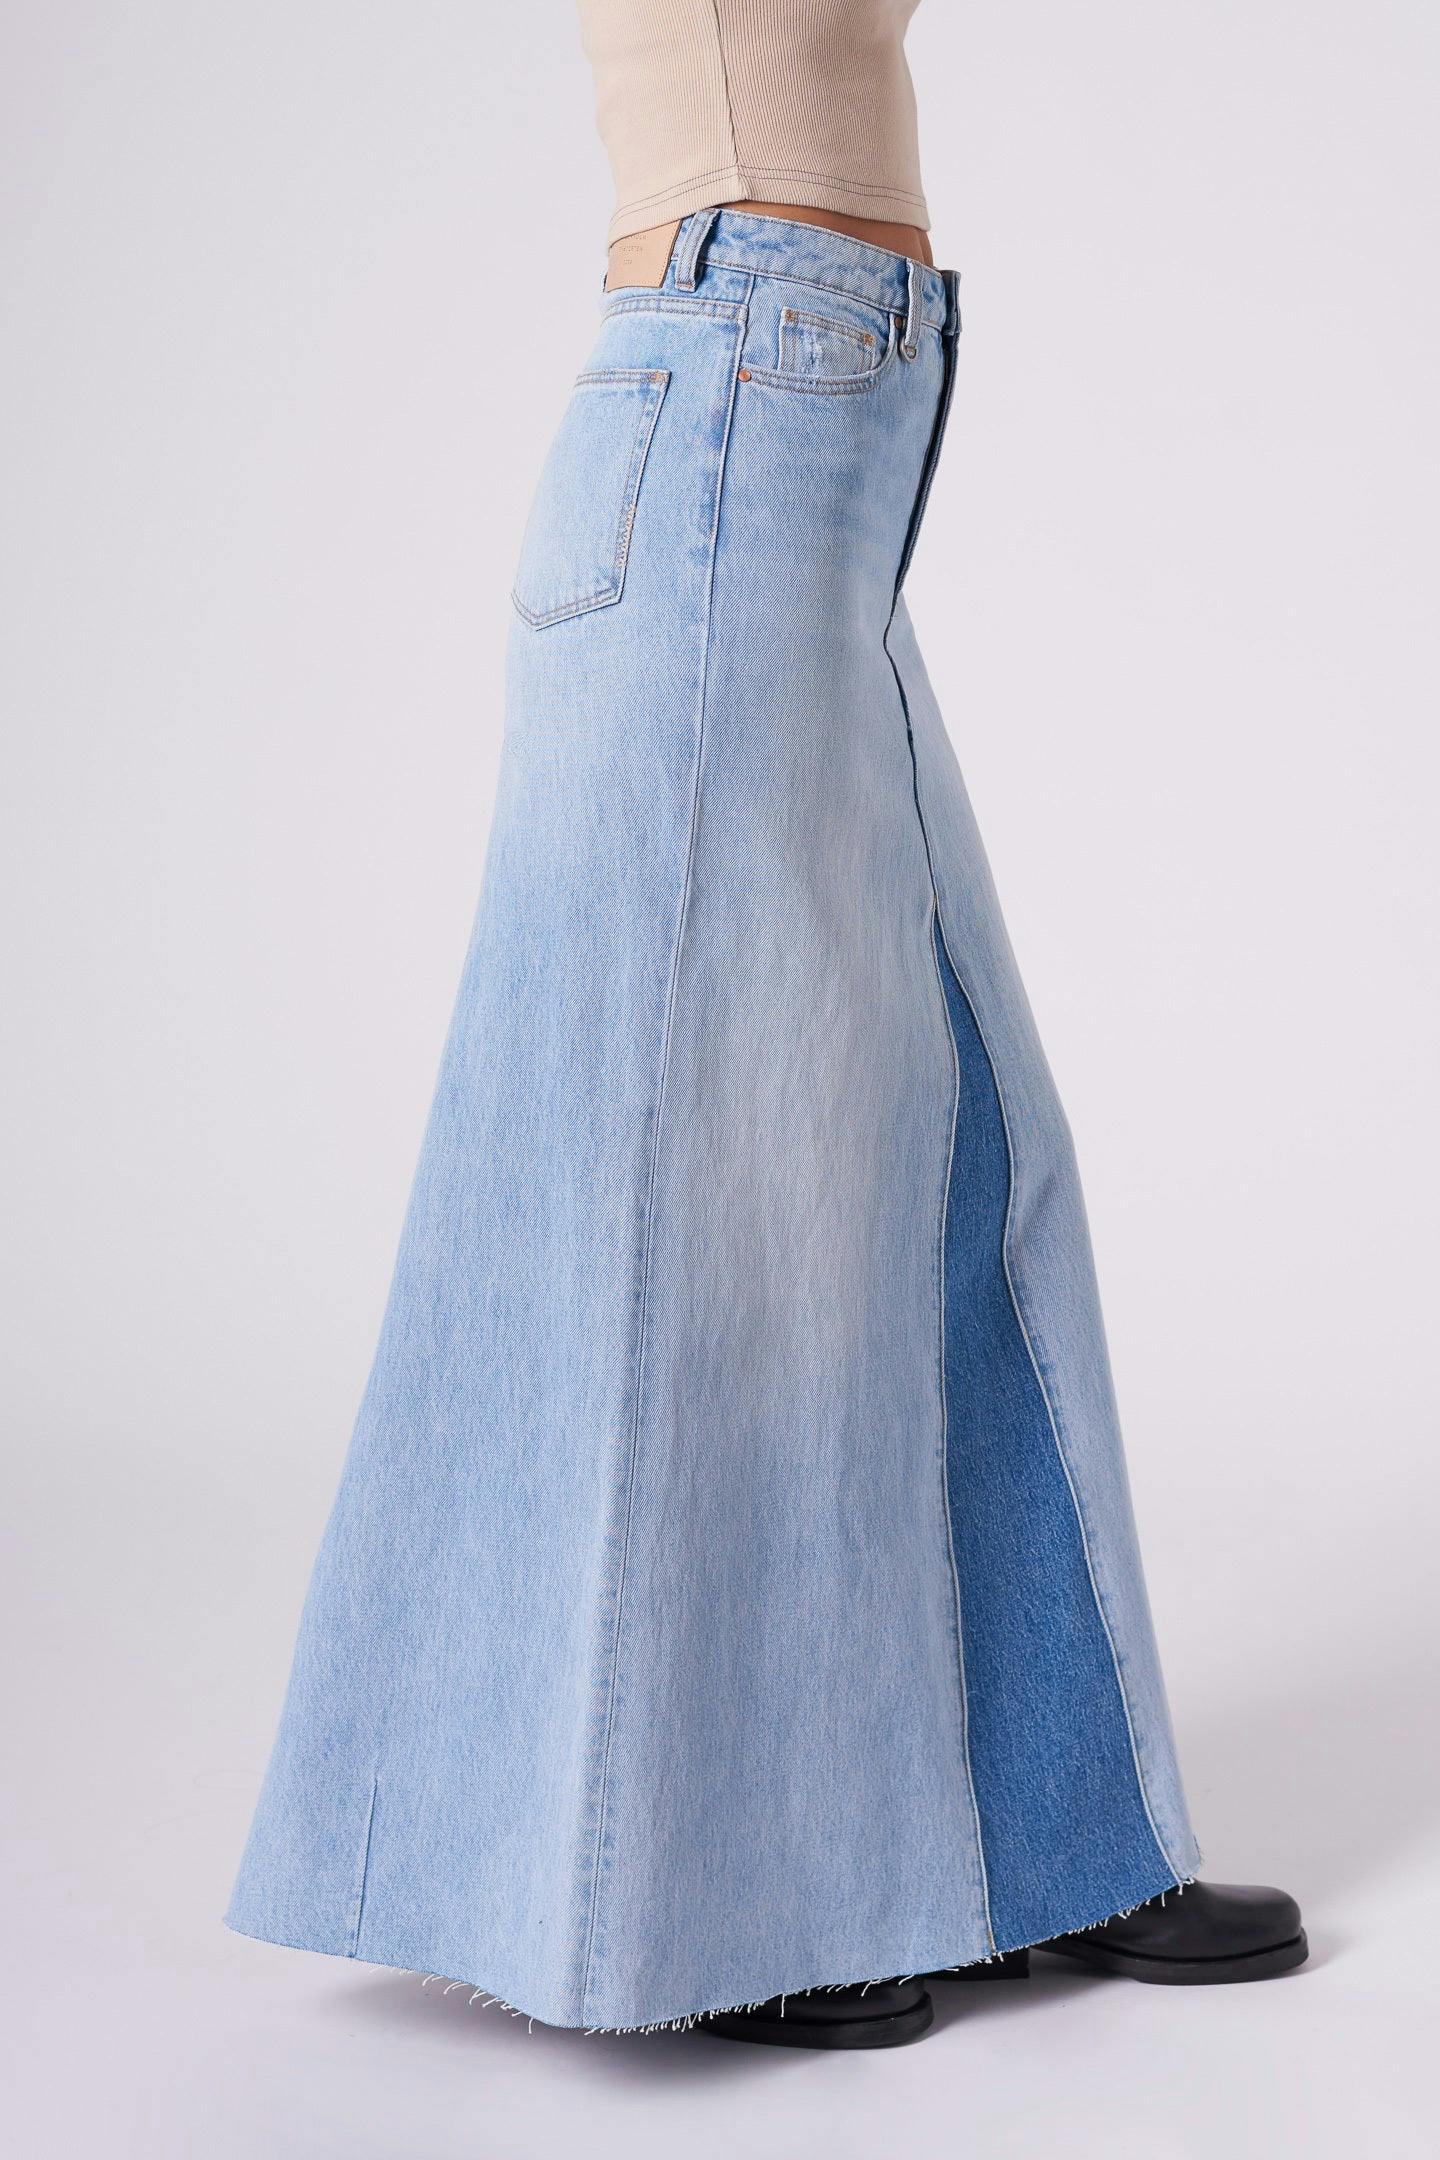 Rework Maxi Skirt - Light Bleach Neuw maxi blue womens-skirts 